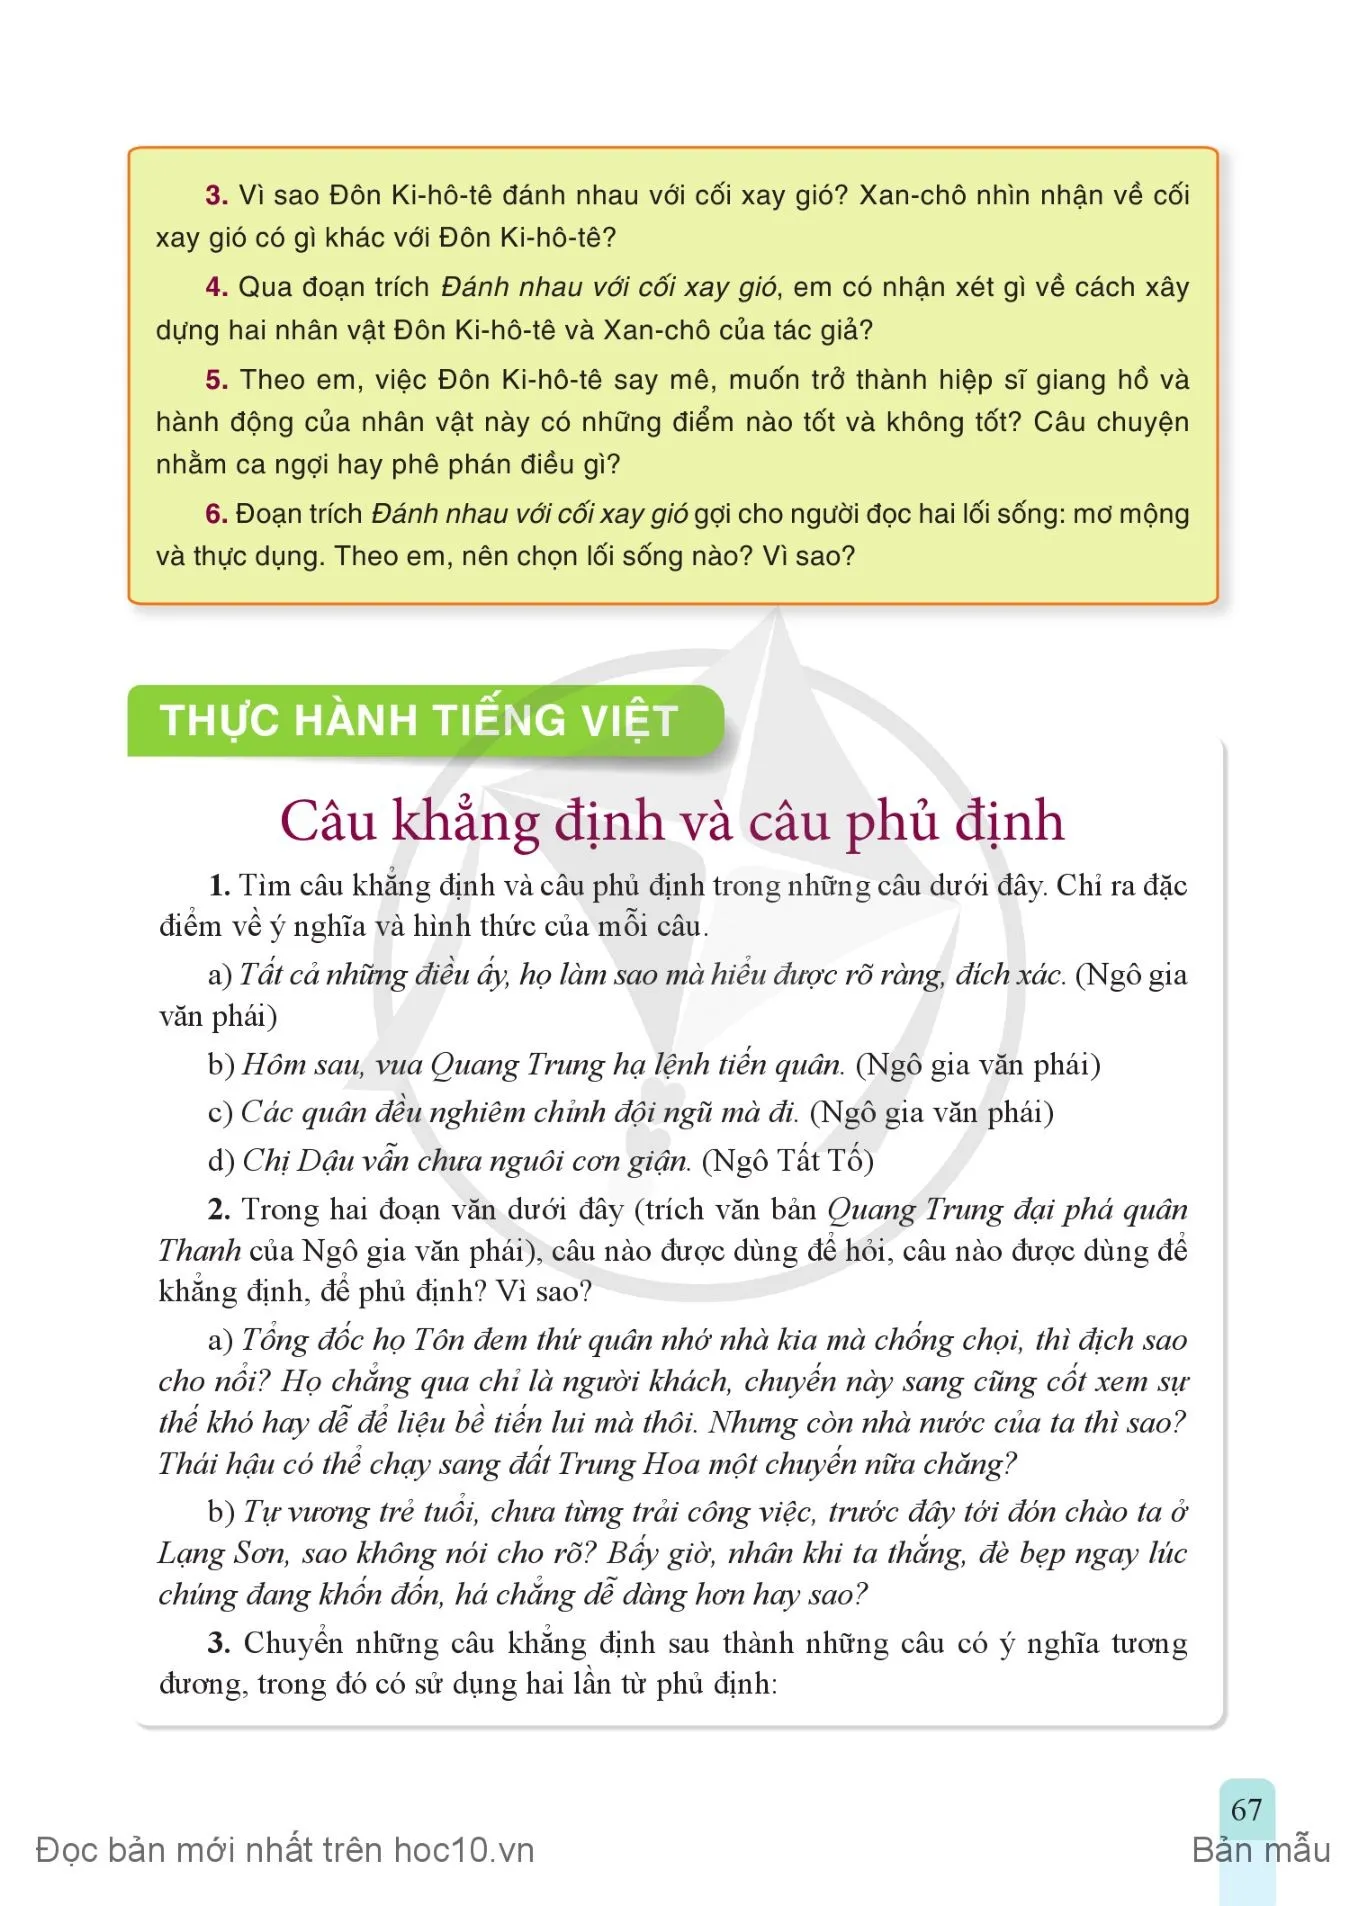 • Thực hành tiếng Việt: Câu khẳng định và câu phủ định